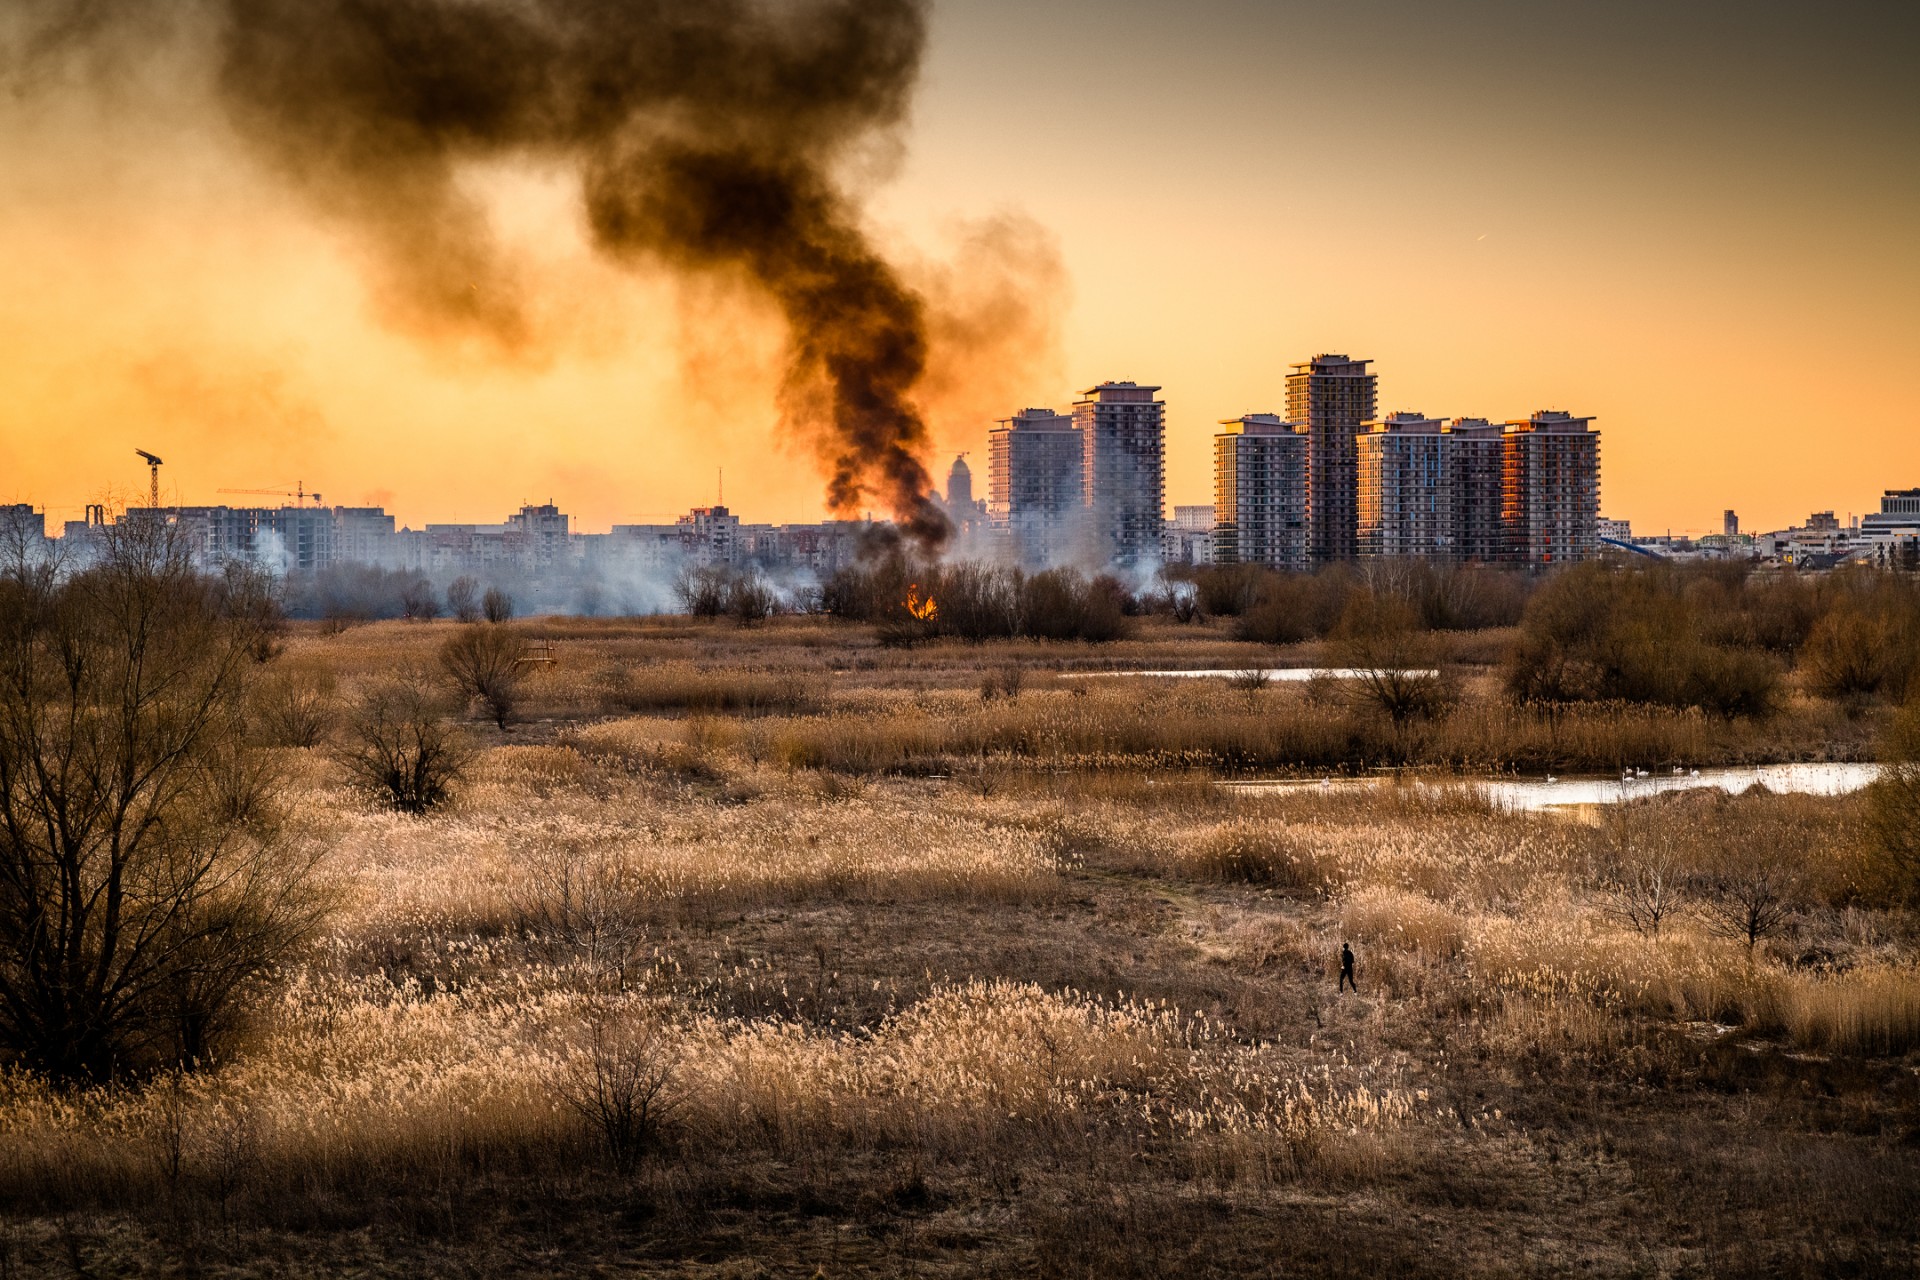 Incendiu Delta Văcărești - 24 februarie 2020